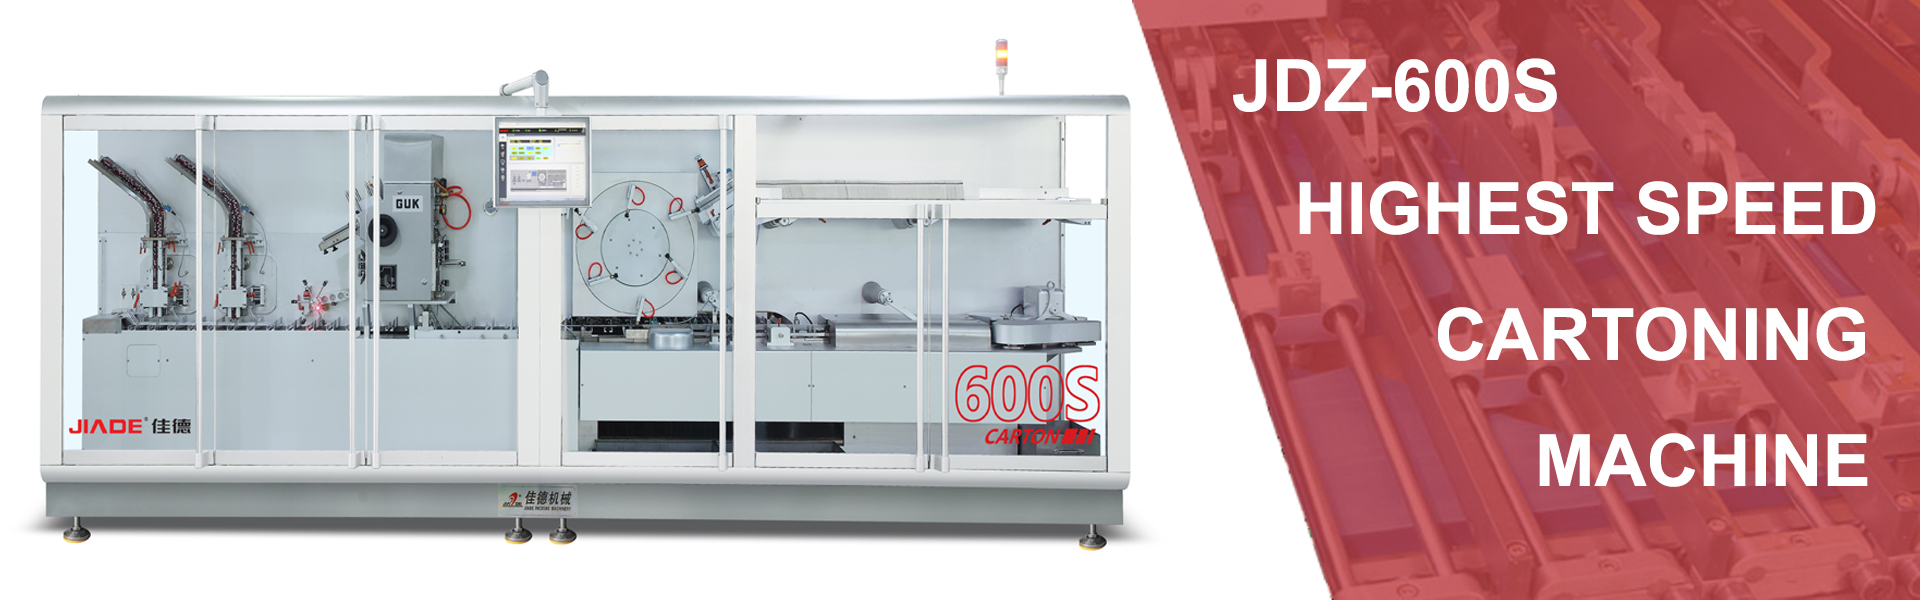 jdz-600s-highest-speed-cartoning-machine